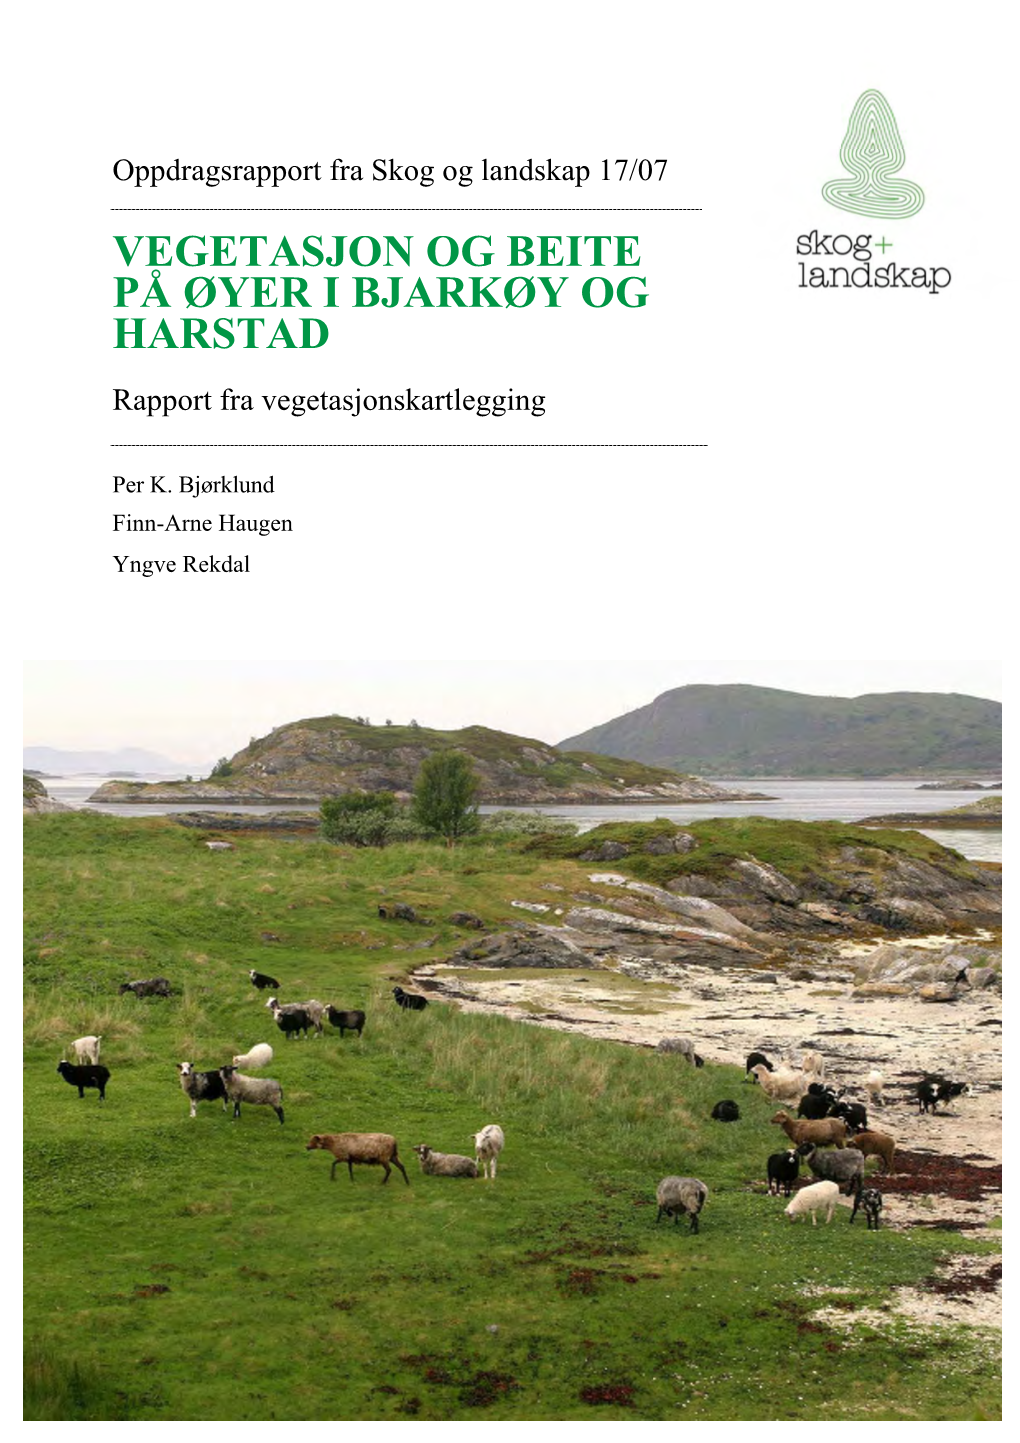 VEGETASJON OG BEITE PÅ ØYER I BJARKØY OG HARSTAD Rapport Fra Vegetasjonskartlegging